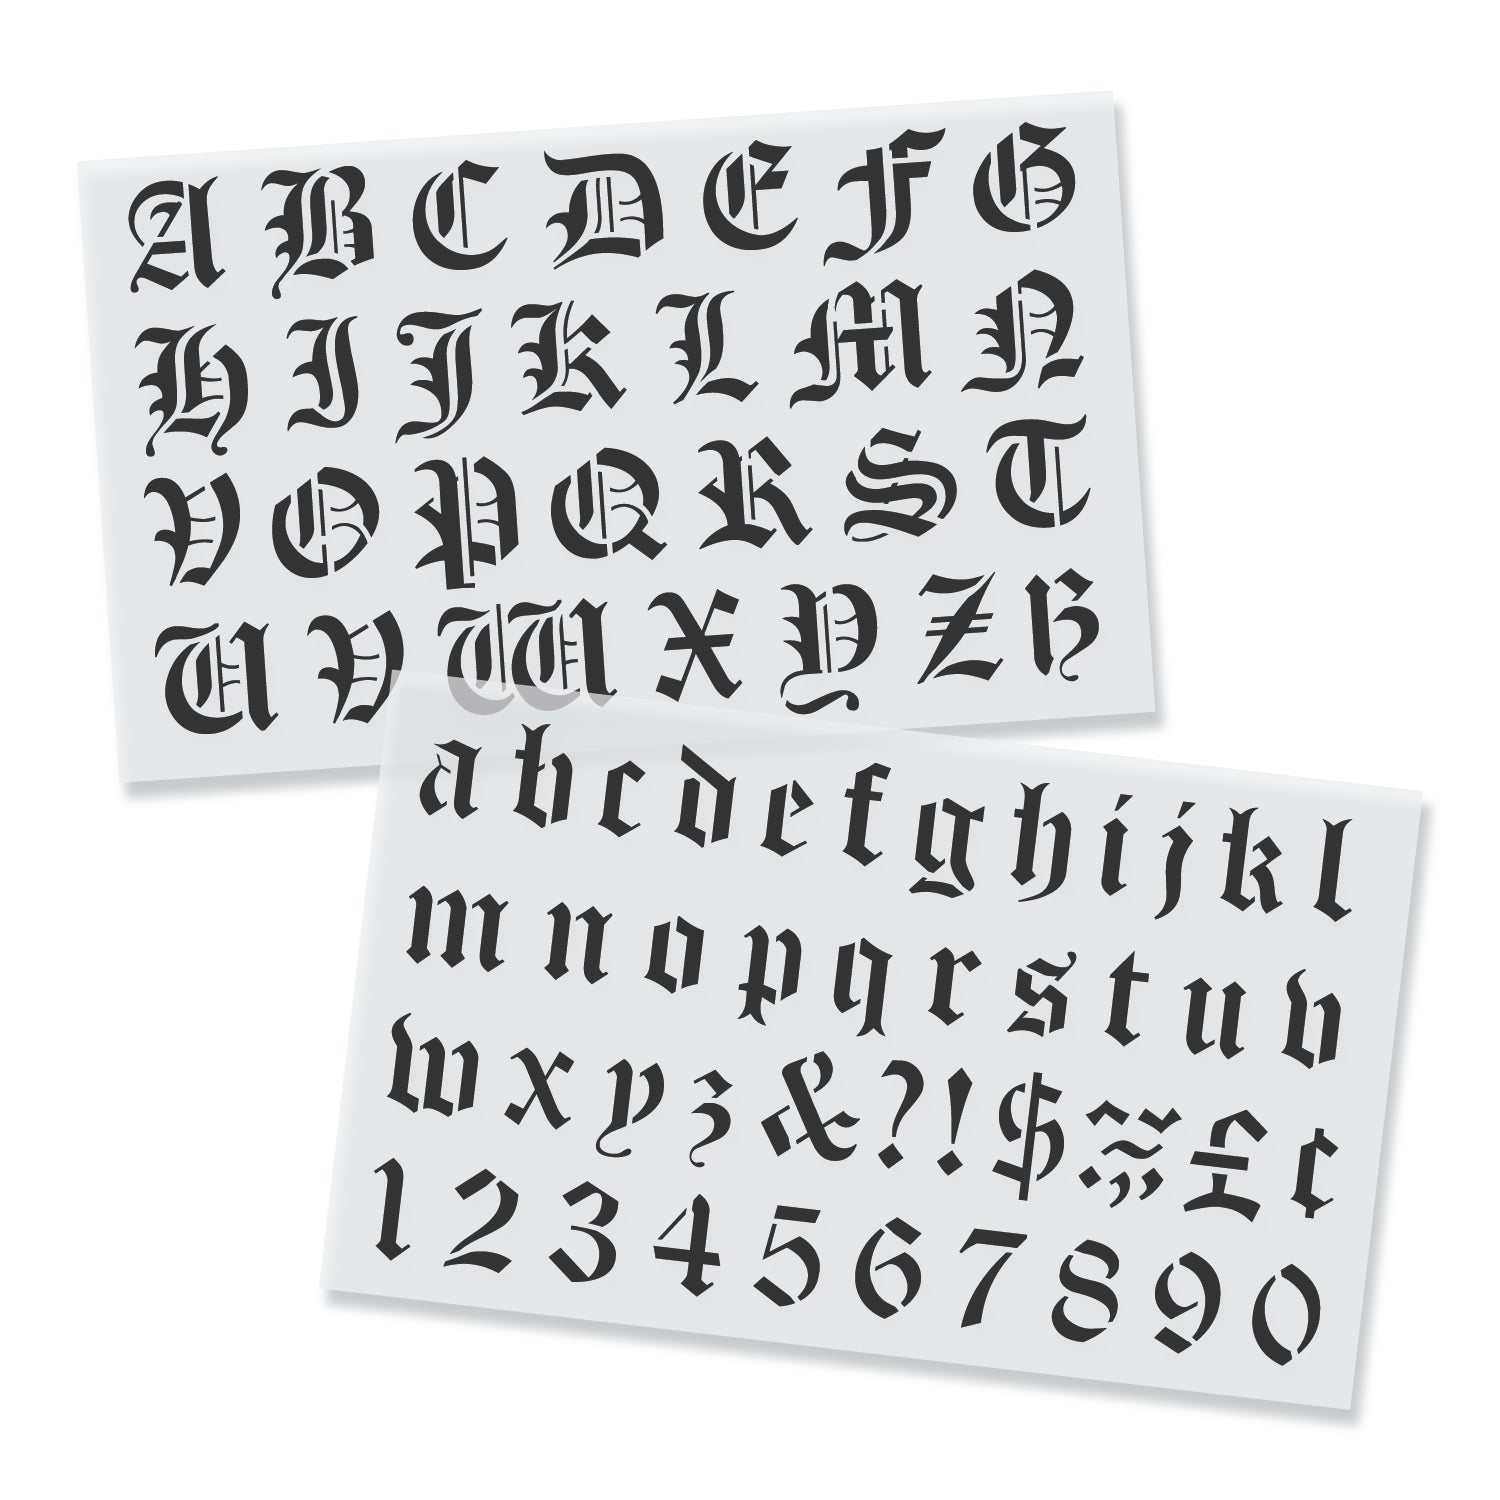 4 Alphabet Kit for Curbs Stencil — 1-800-Stencil